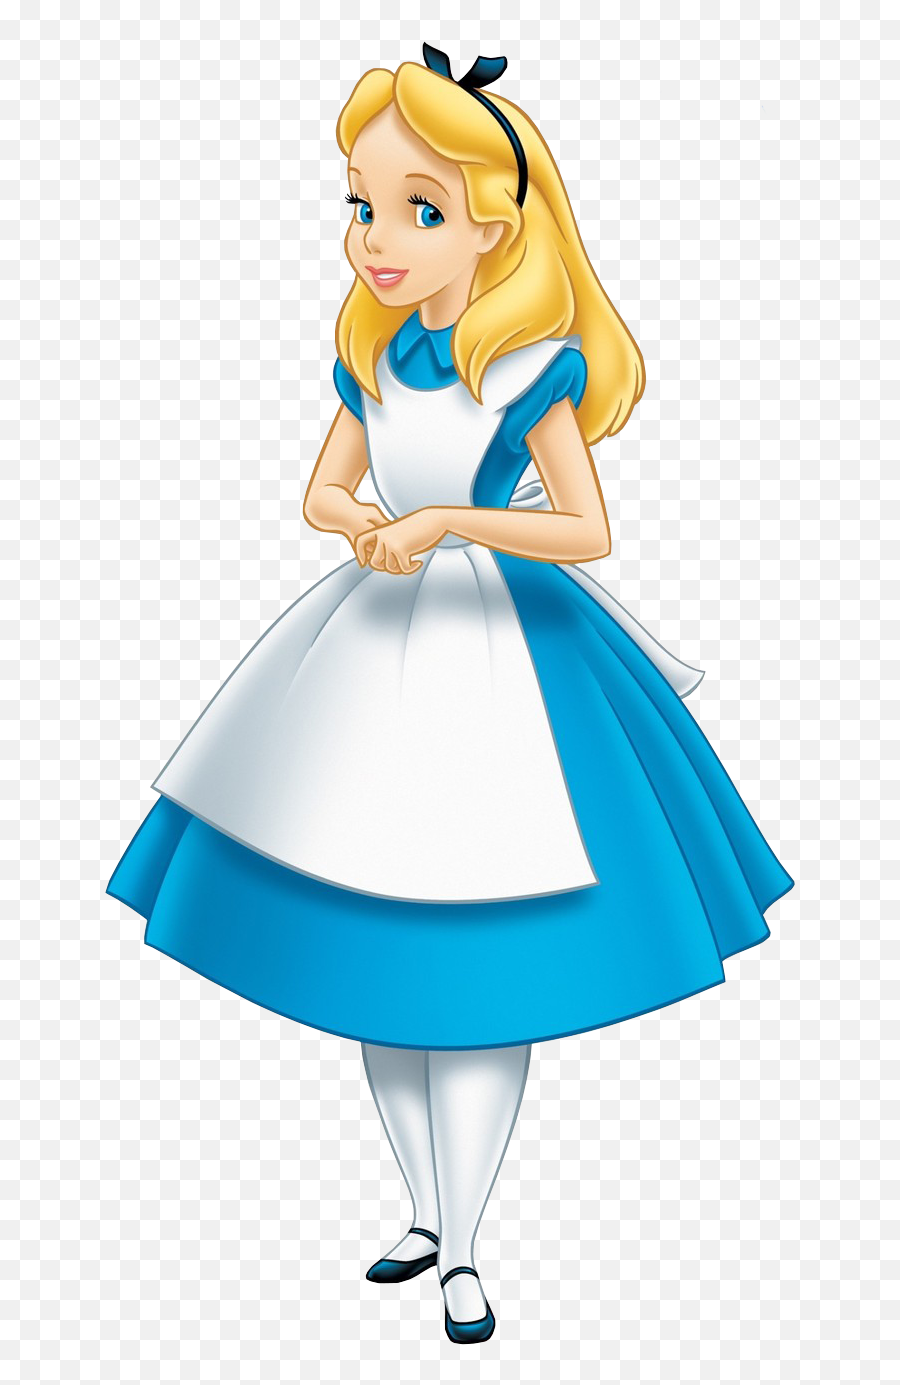 Disney Alice In Wonderland Png 1 - Alice From Alice In Wonderland,Alice In Wonderland Png